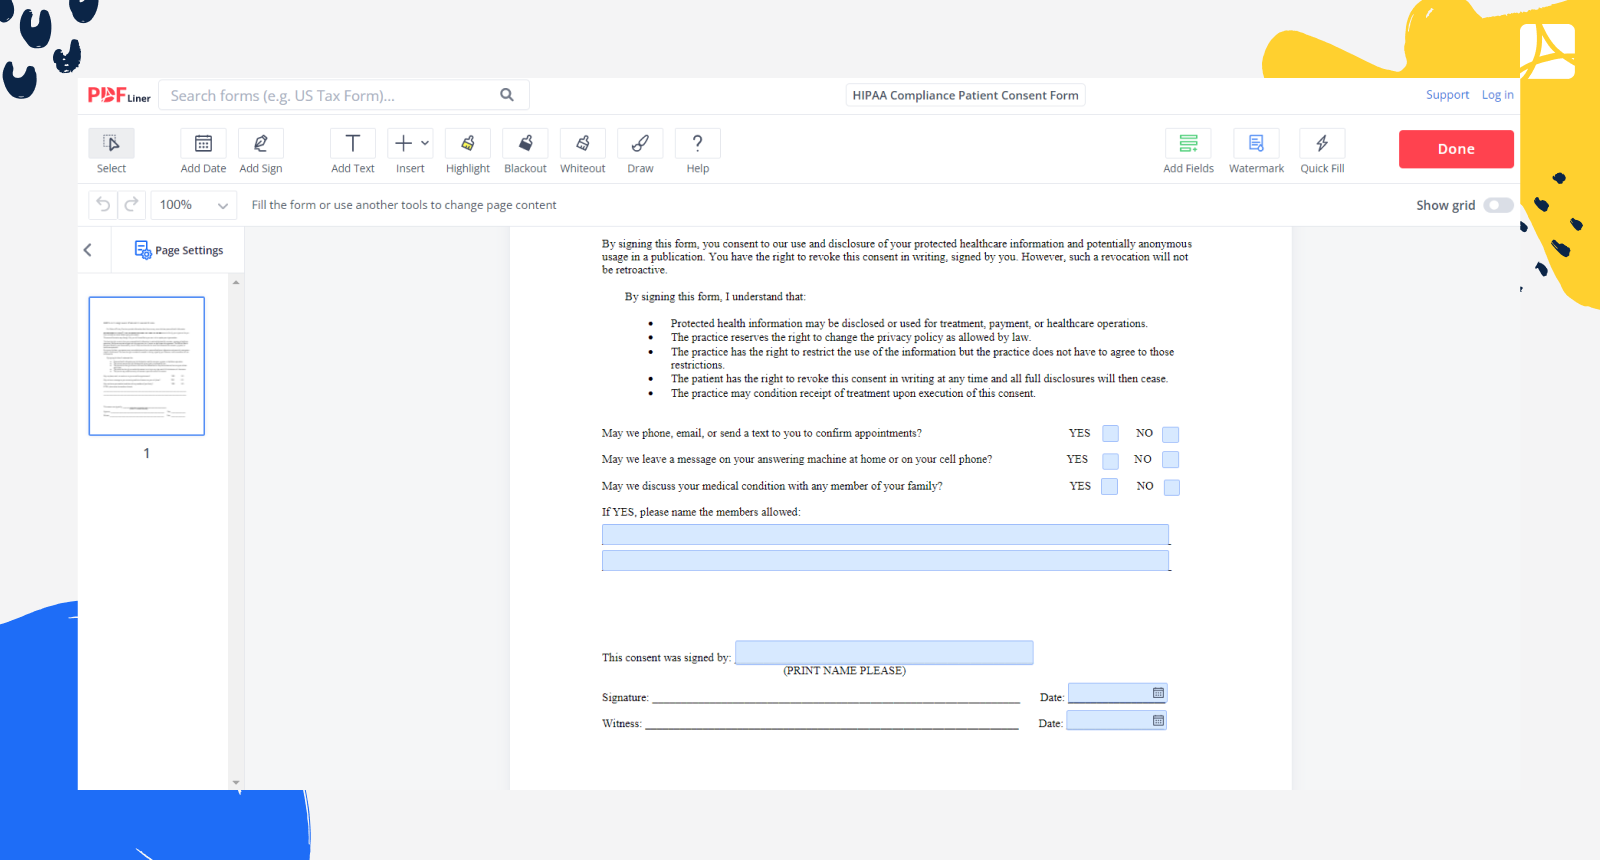 HIPAA Compliance Patient Consent Form Screenshot